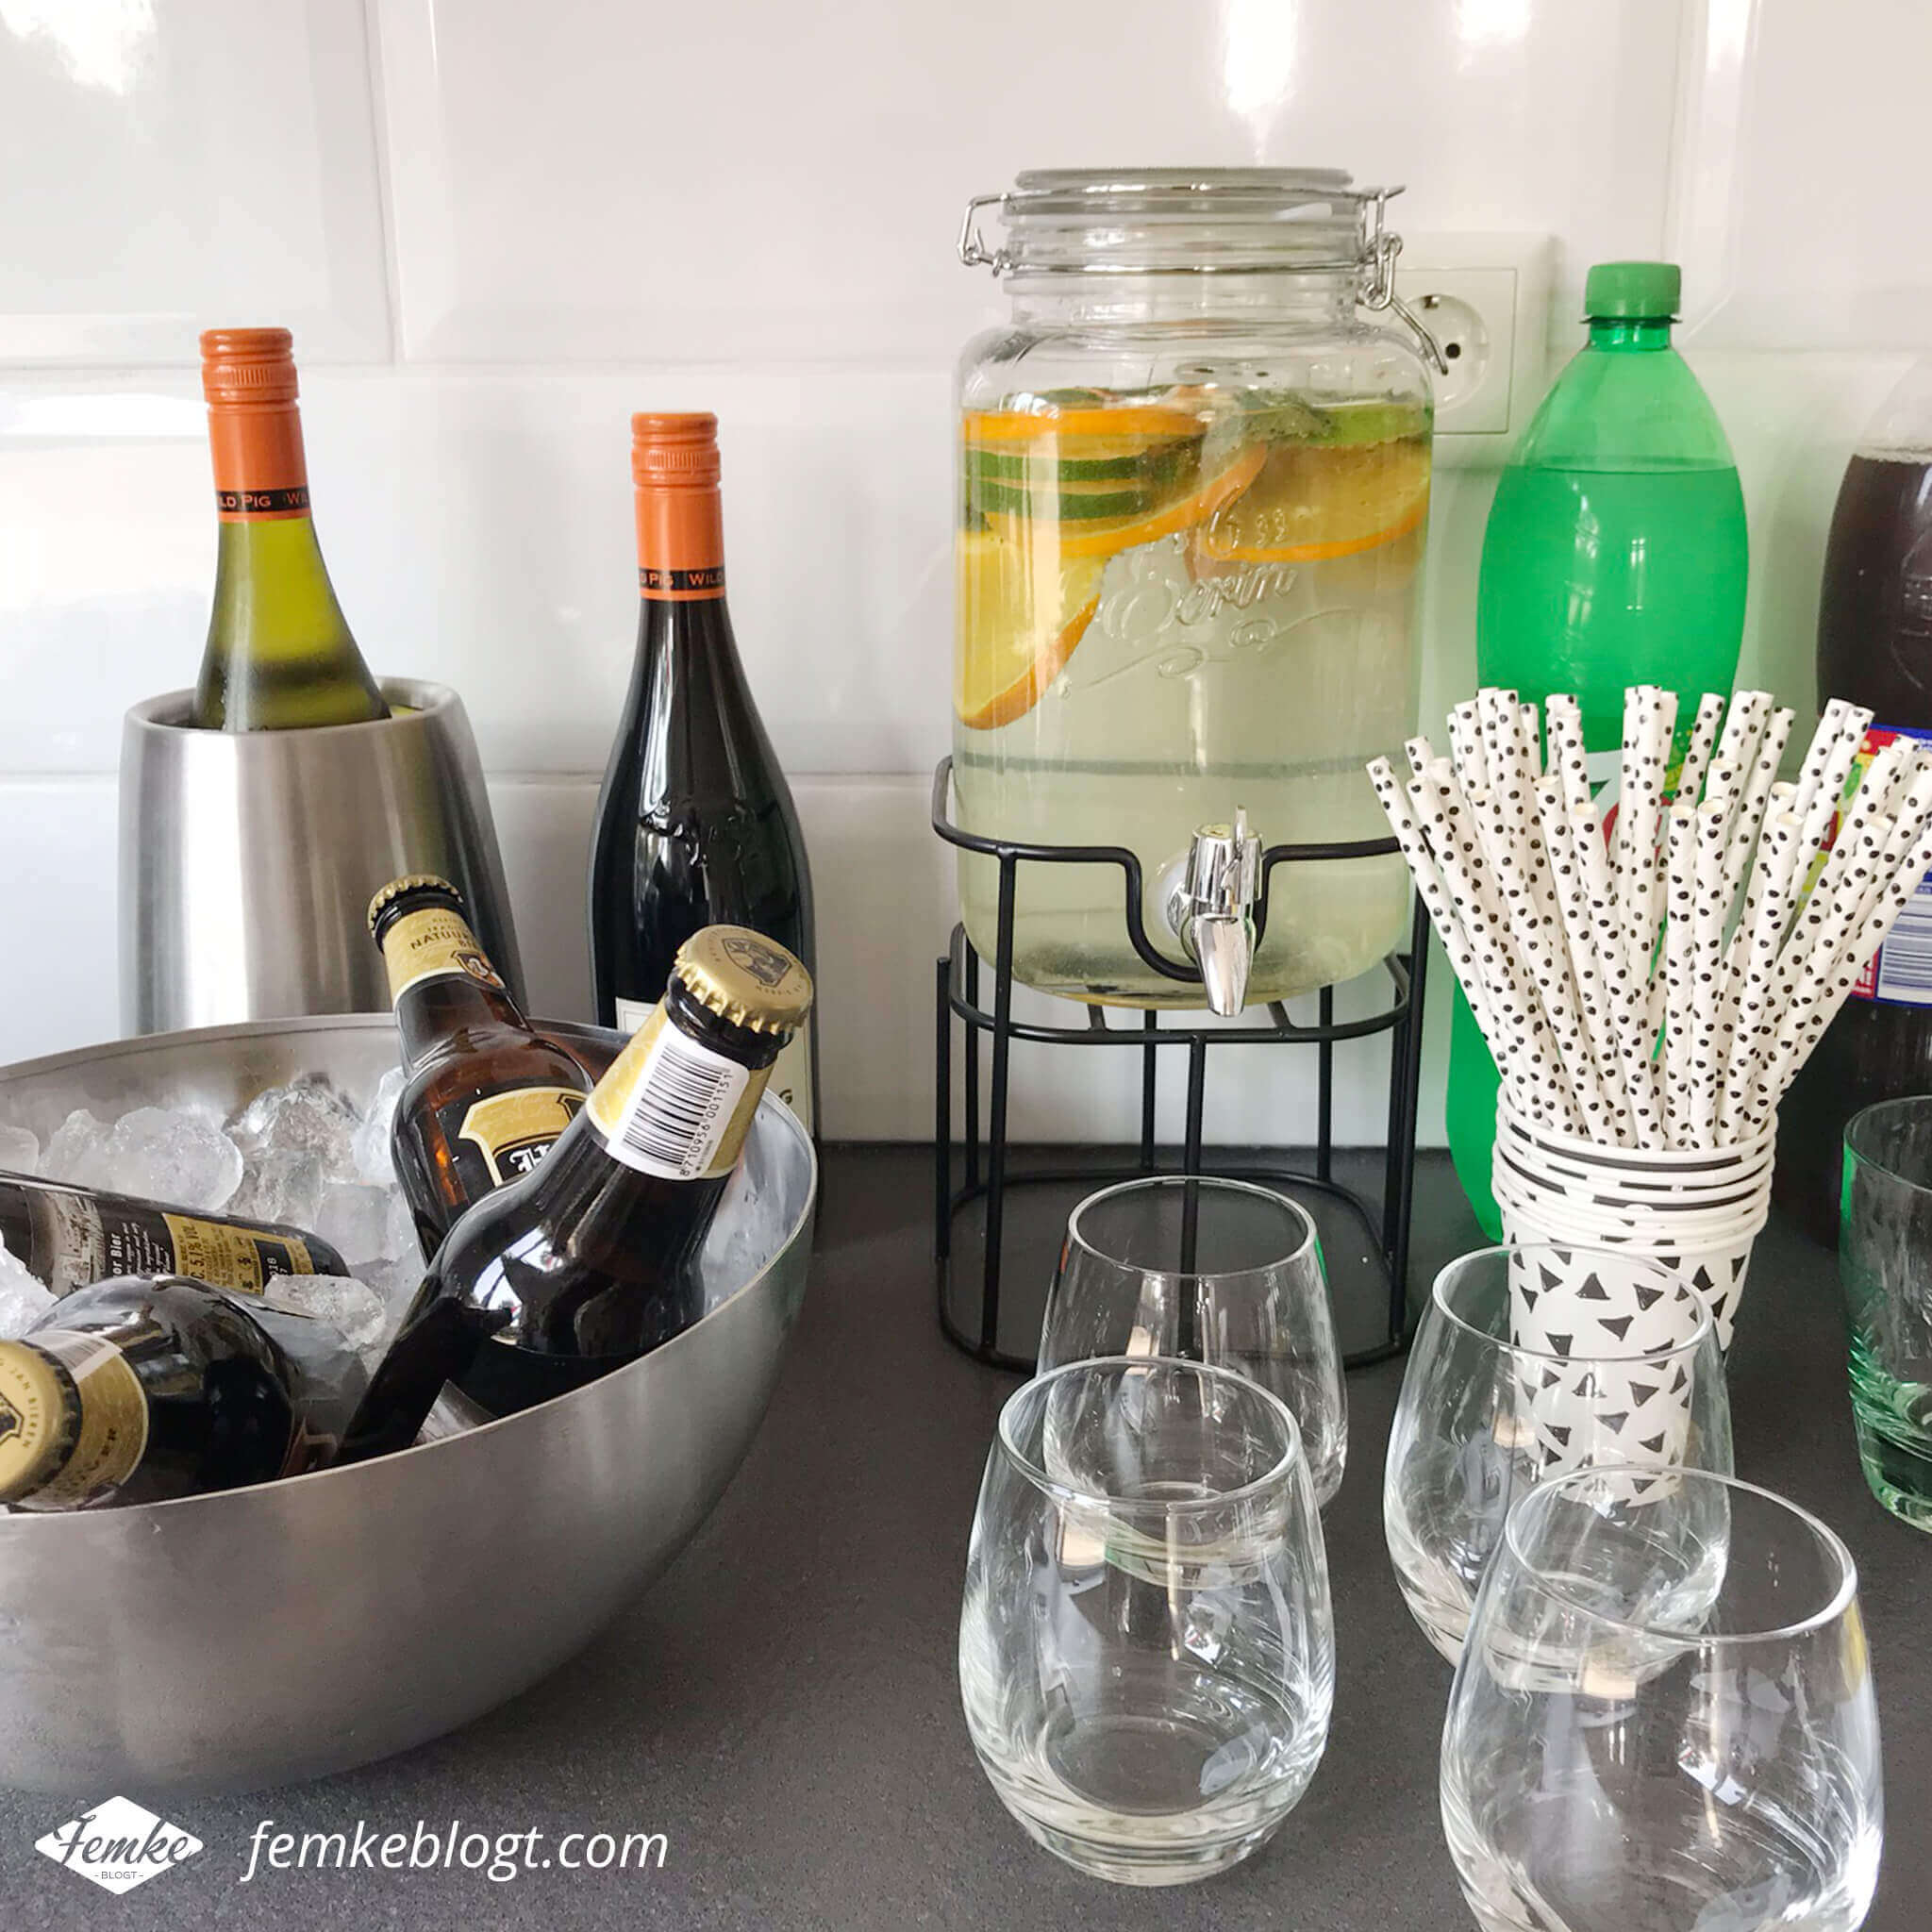 Onze housewarming | Verschillende dranken en fruitwater in een handige drankdispenser met kraantje.